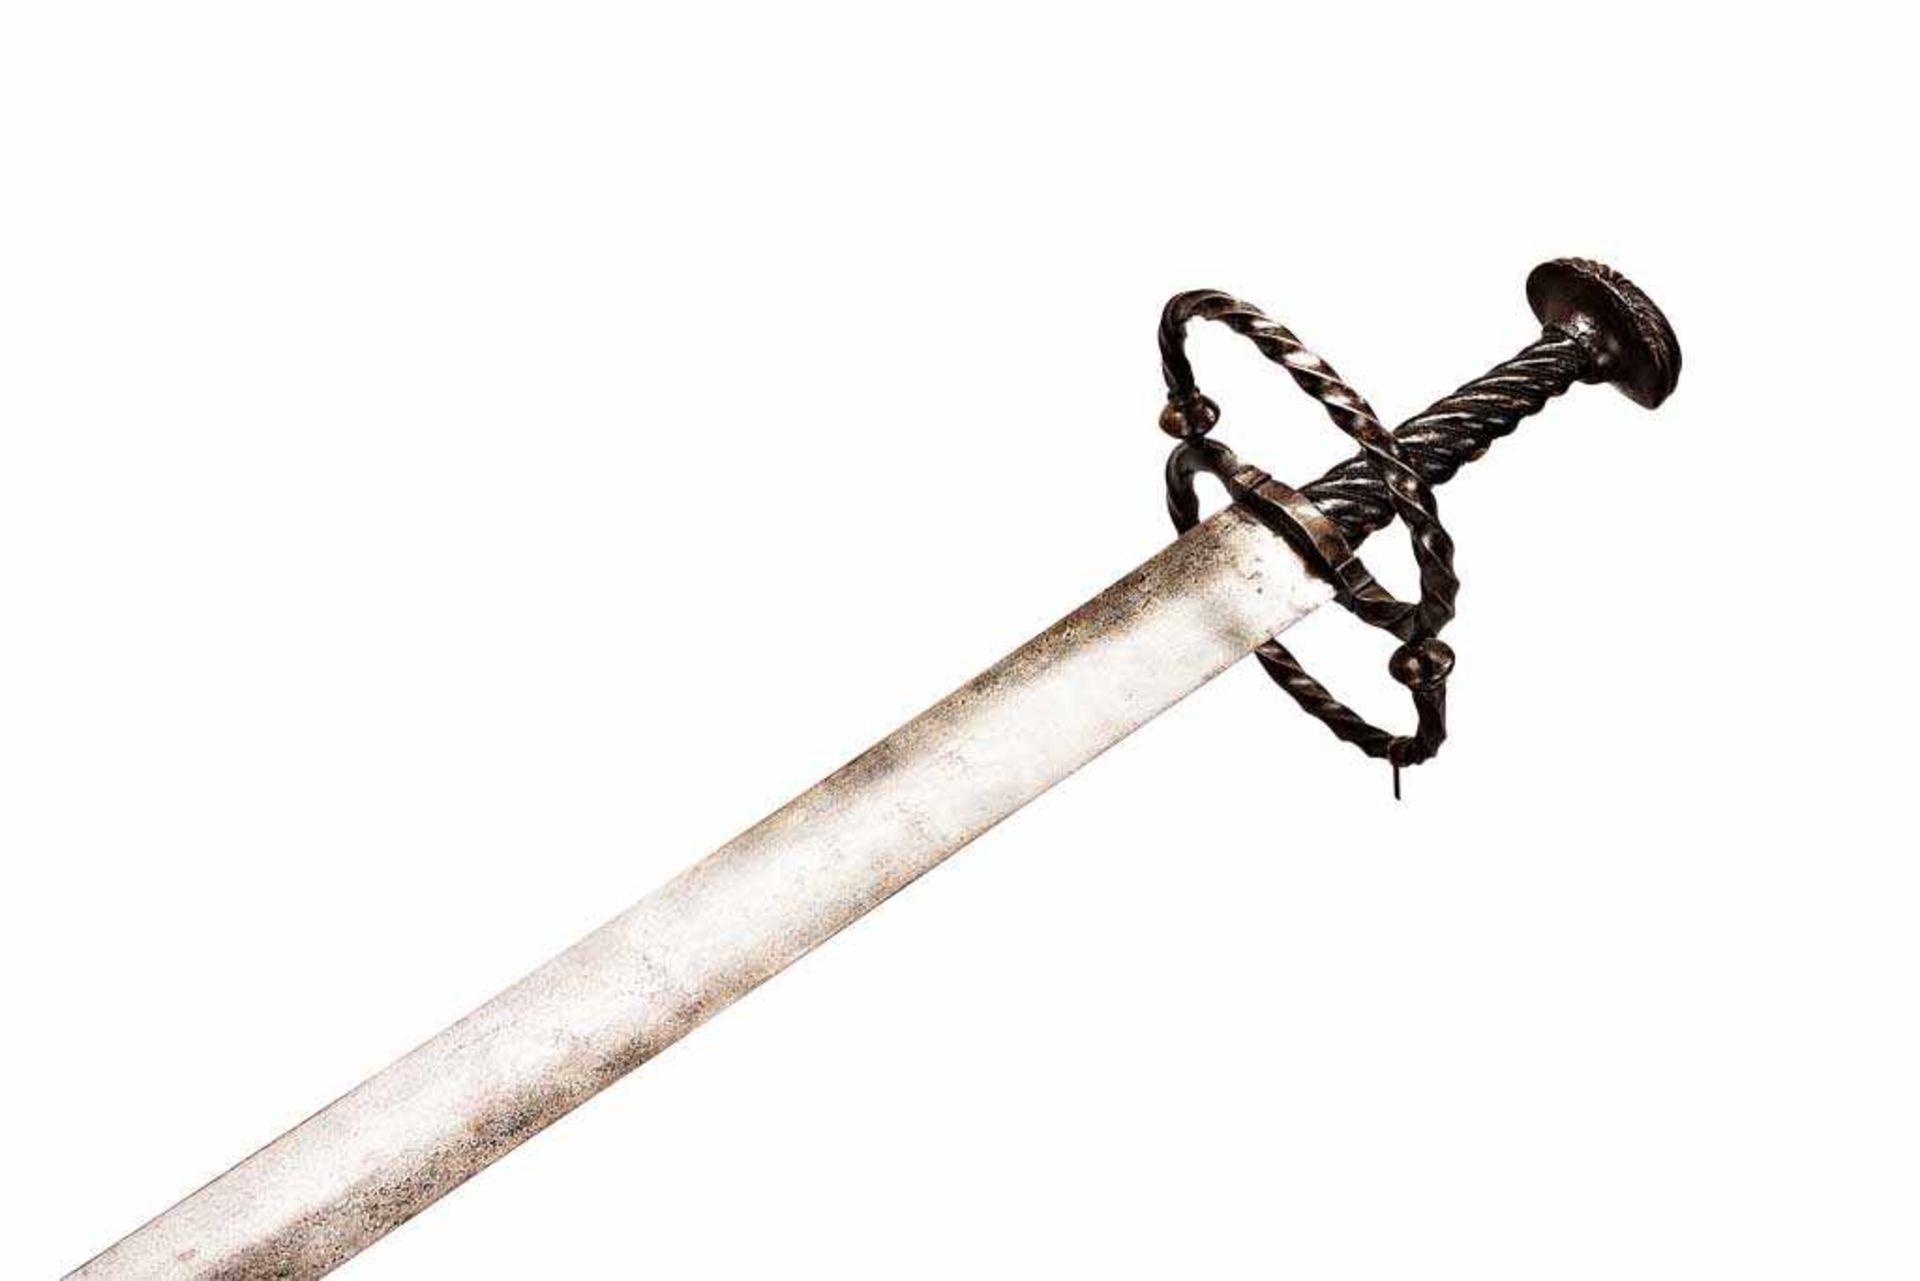 Katzbalger im Stil des frühen 16. Jh. mit breiter gemarkter Klinge. Parierringe aus gewundetem